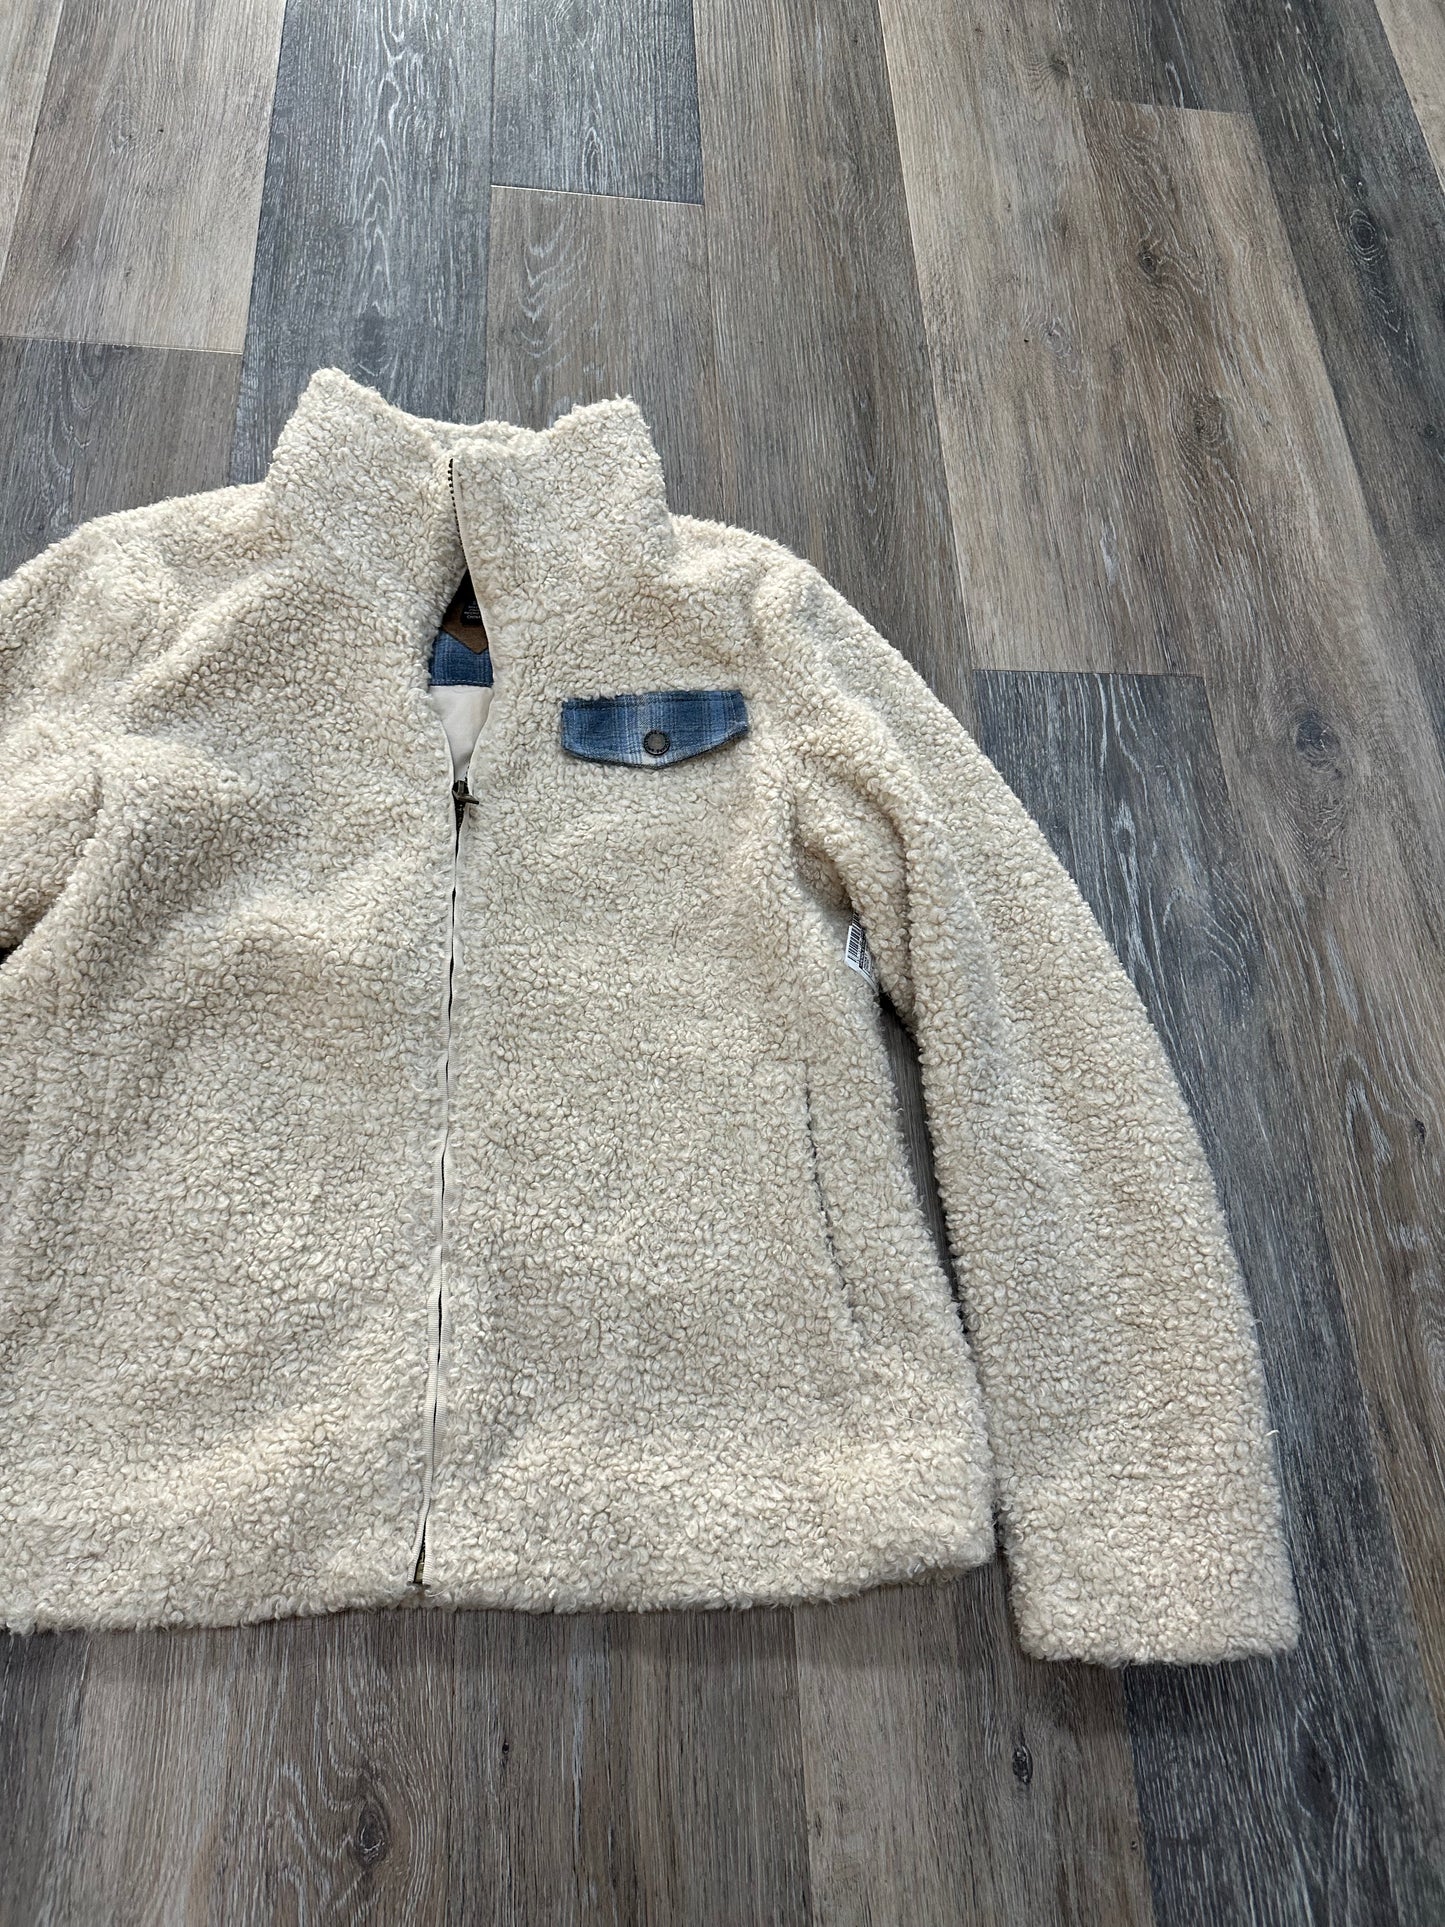 Jacket Faux Fur & Sherpa By Pendleton  Size: S